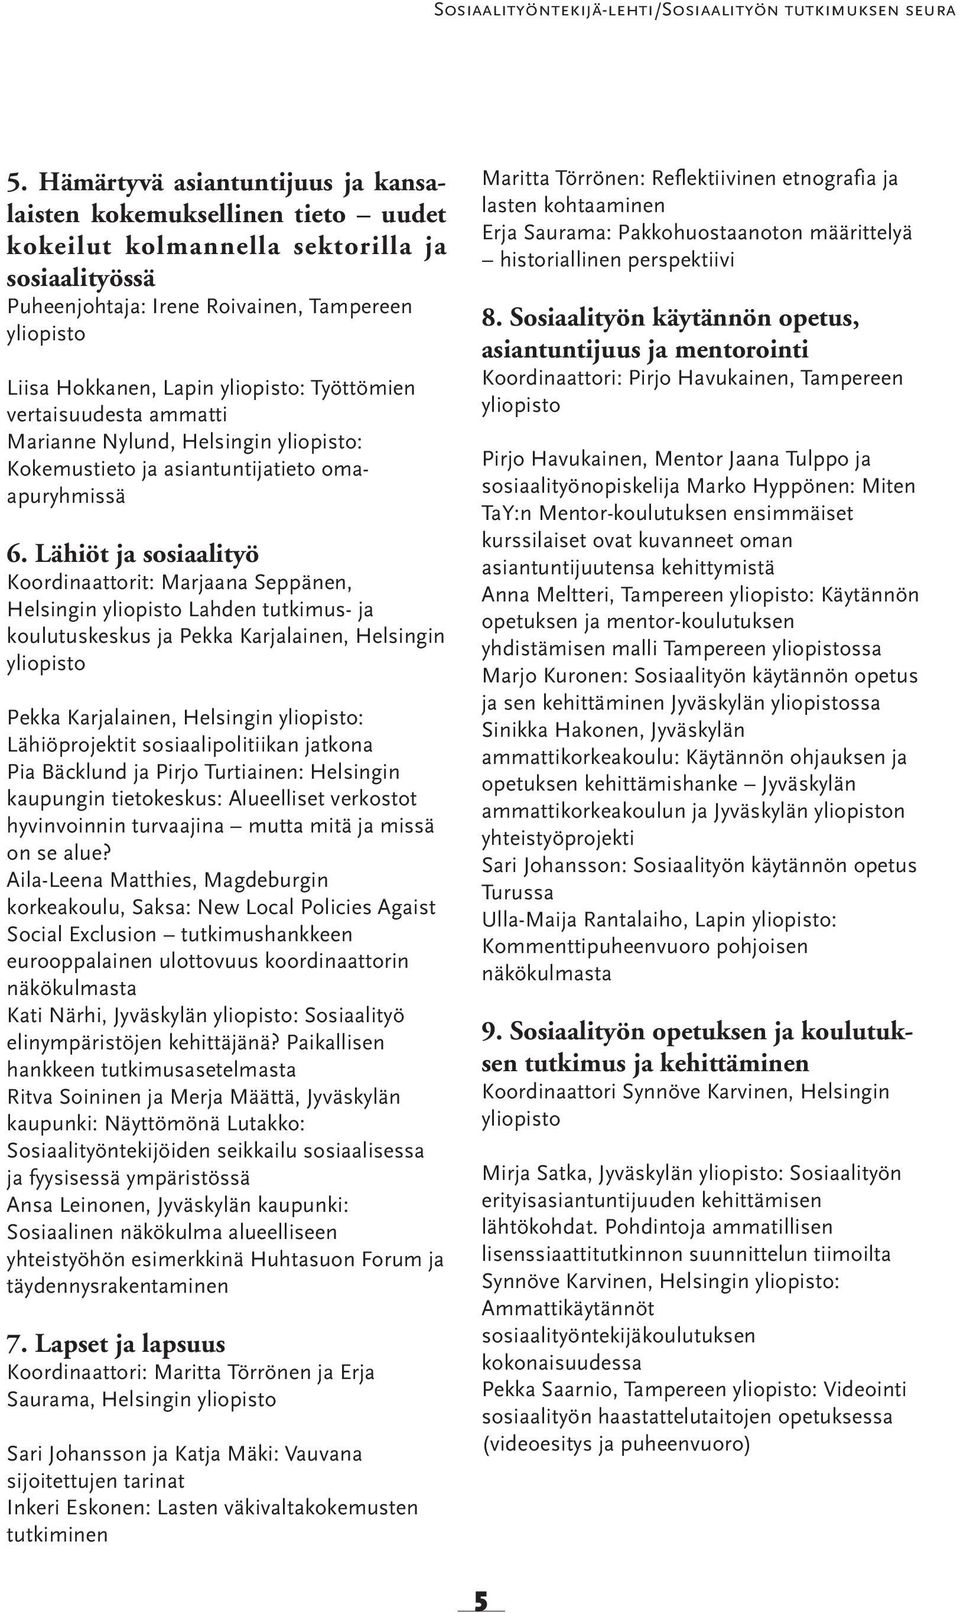 yliopisto: Työttömien vertaisuudesta ammatti Marianne Nylund, Helsingin yliopisto: Kokemustieto ja asiantuntijatieto omaapuryhmissä 6.